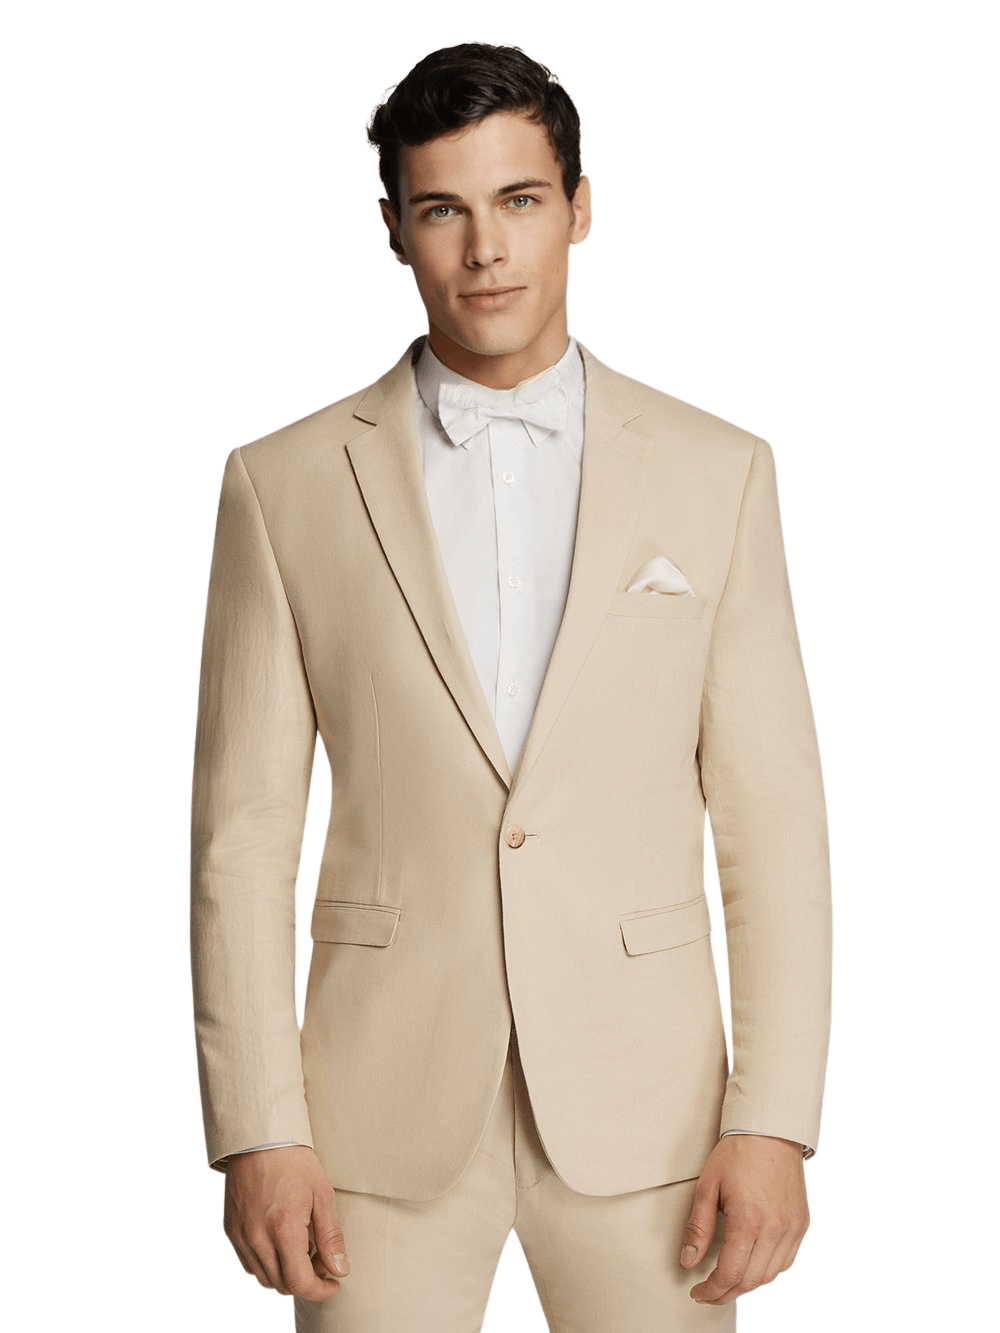 Men's Beige Linen Sport Jacket Stylish Blazer - Threads N Trends